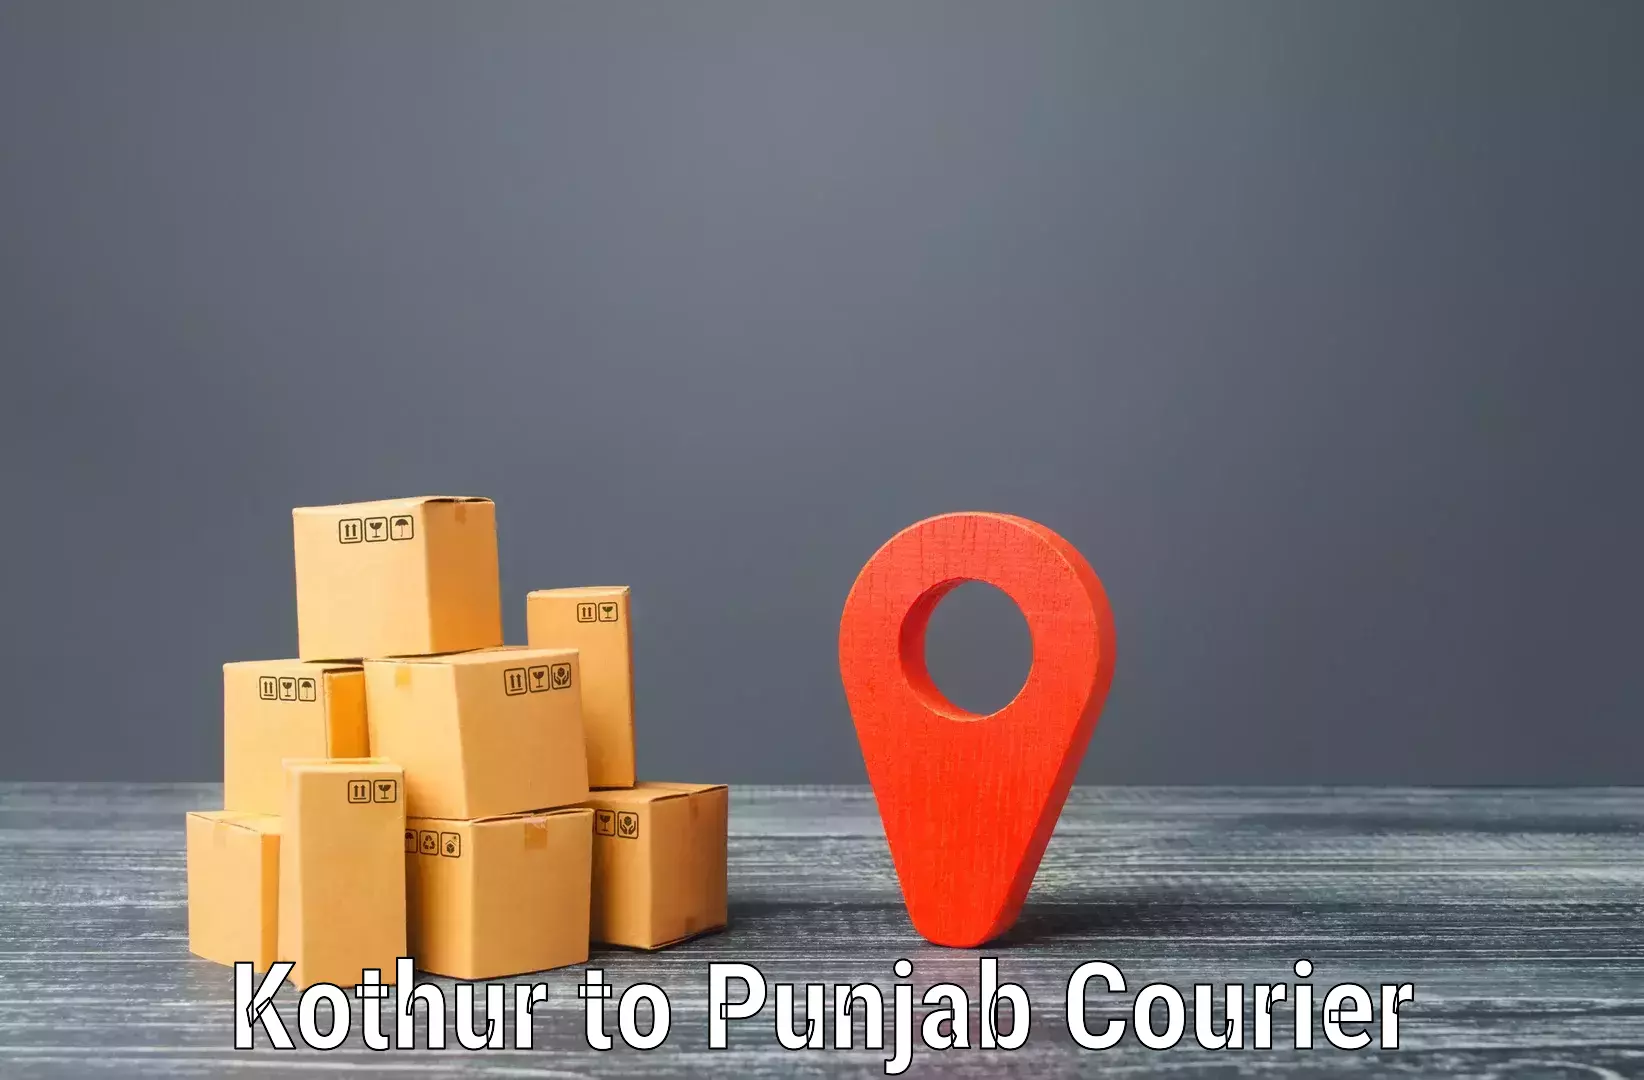 Bulk shipment Kothur to Mohali